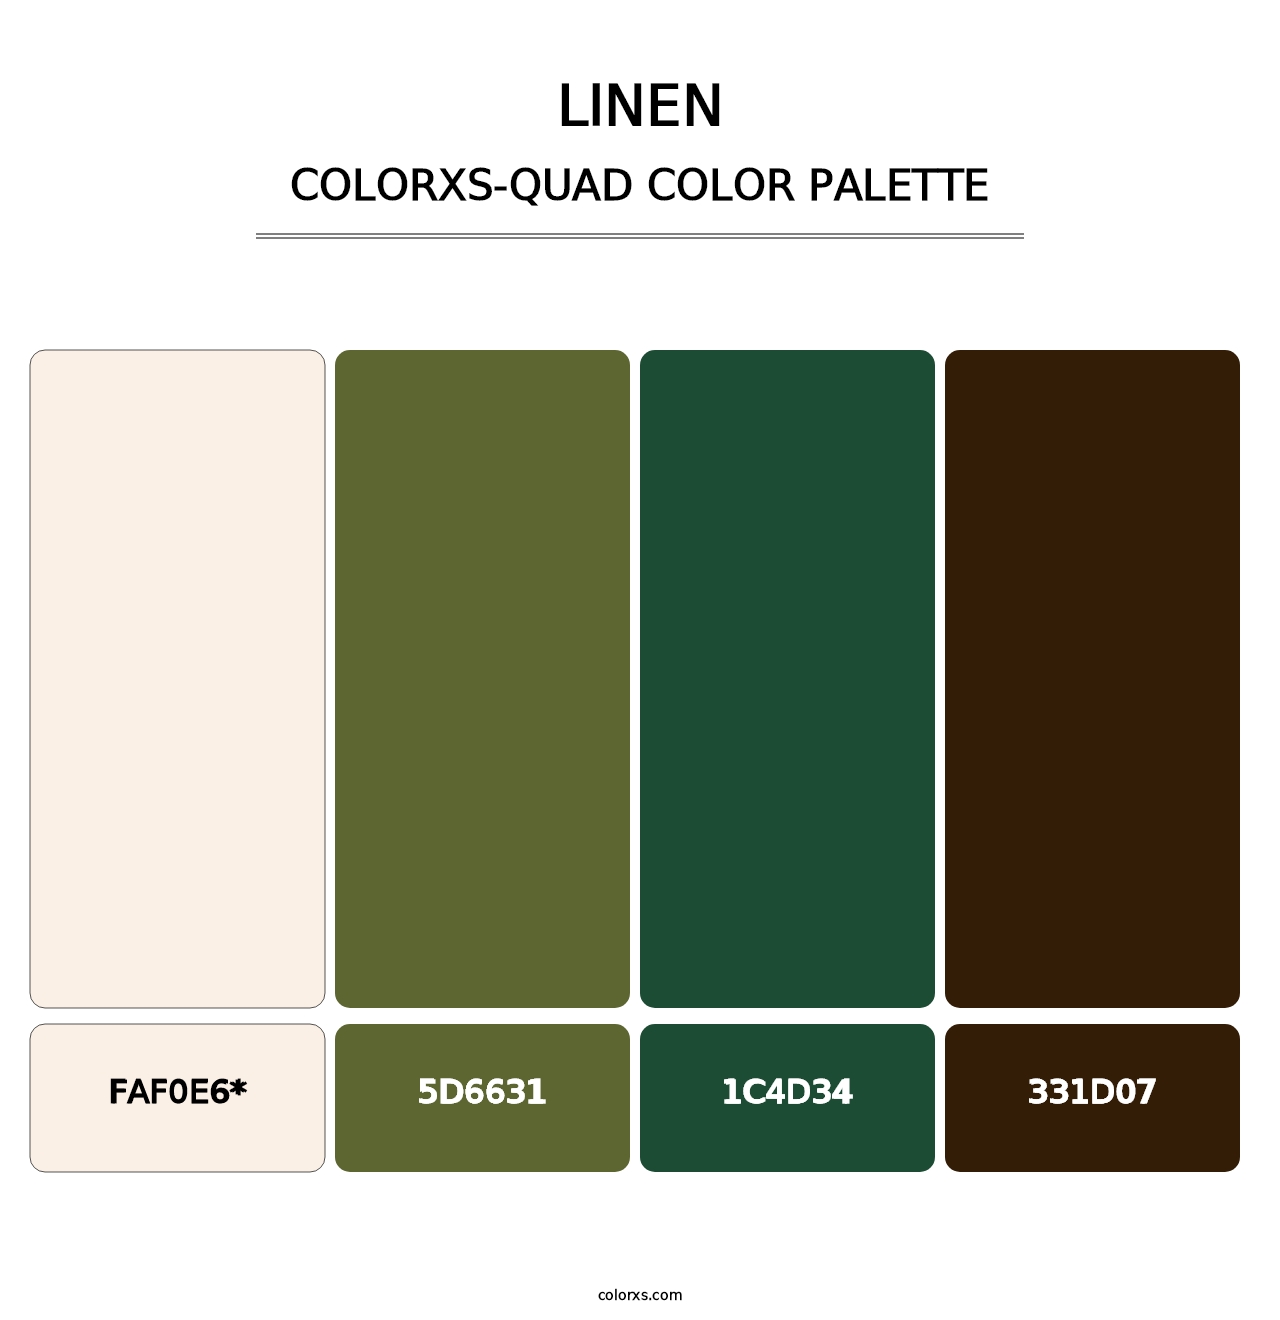 Linen - Colorxs Quad Palette